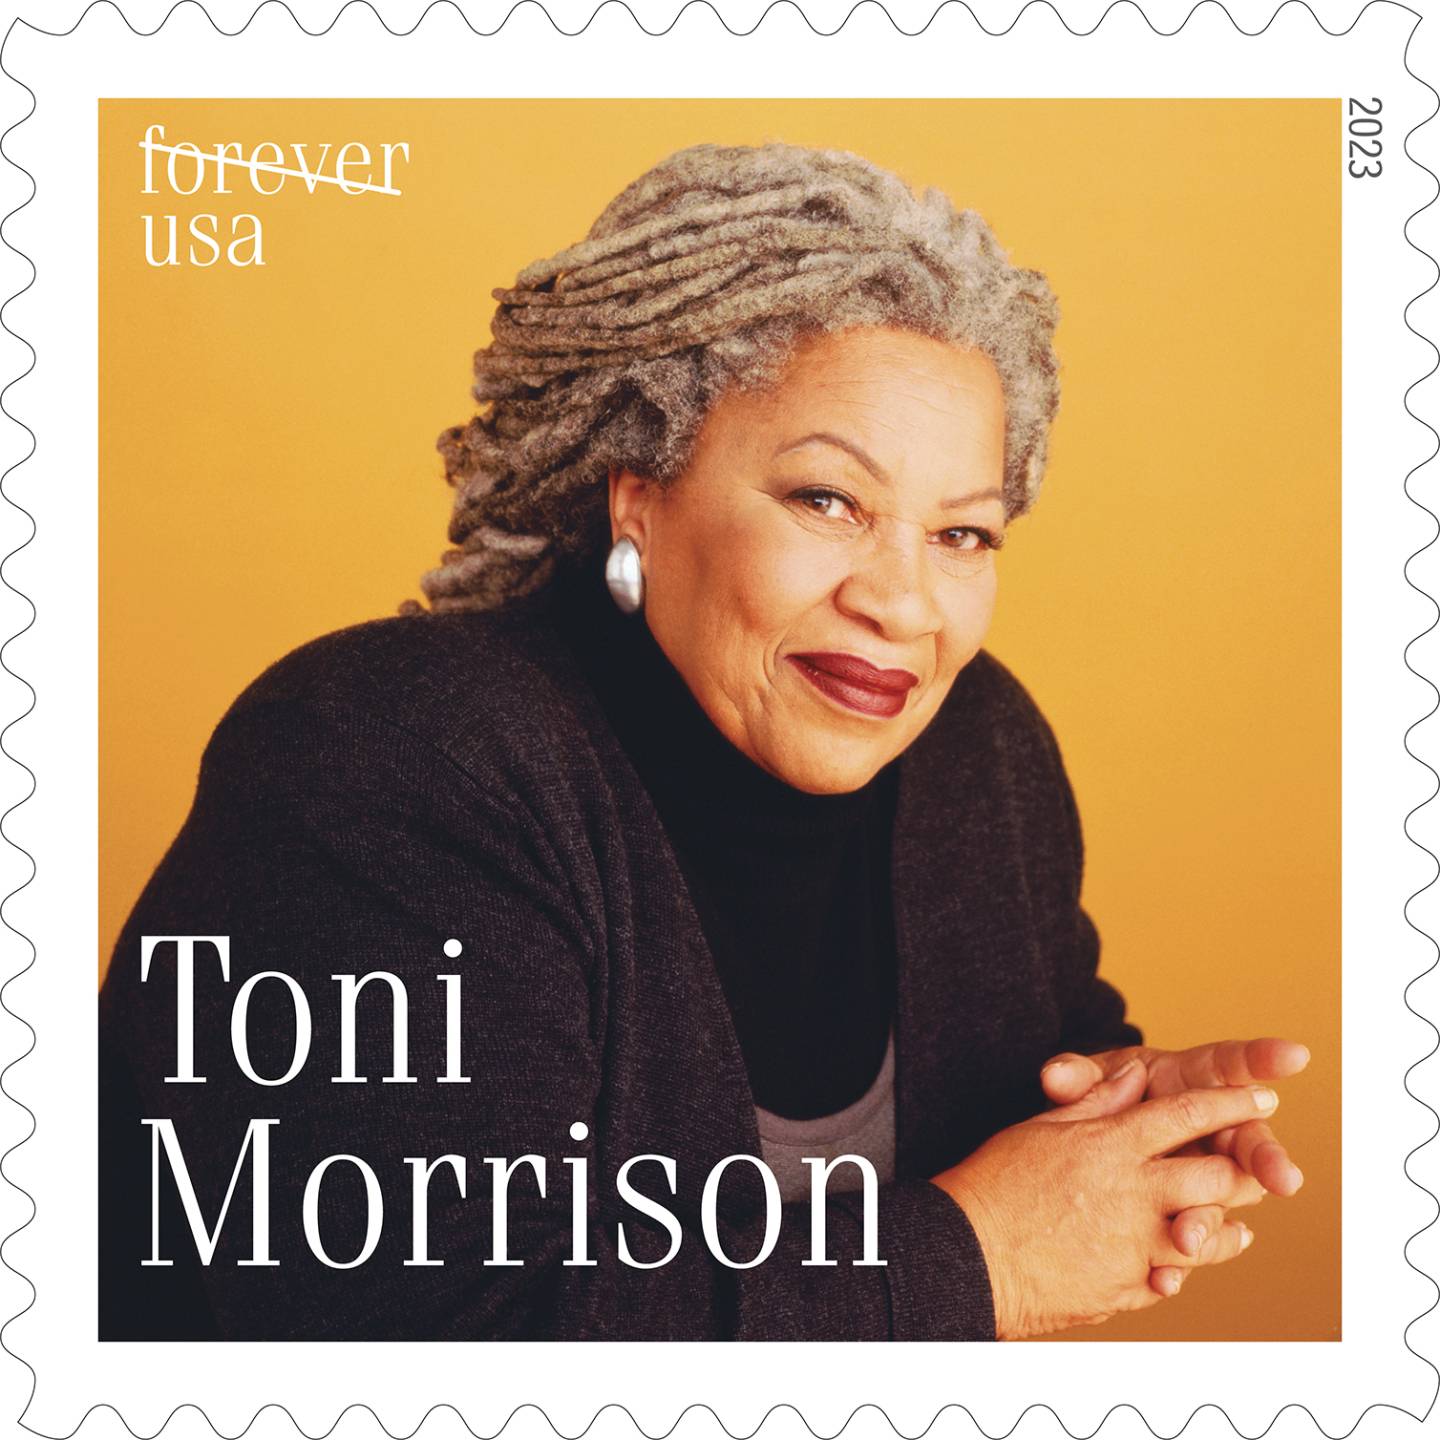 Toni Morrison USPS stamp design